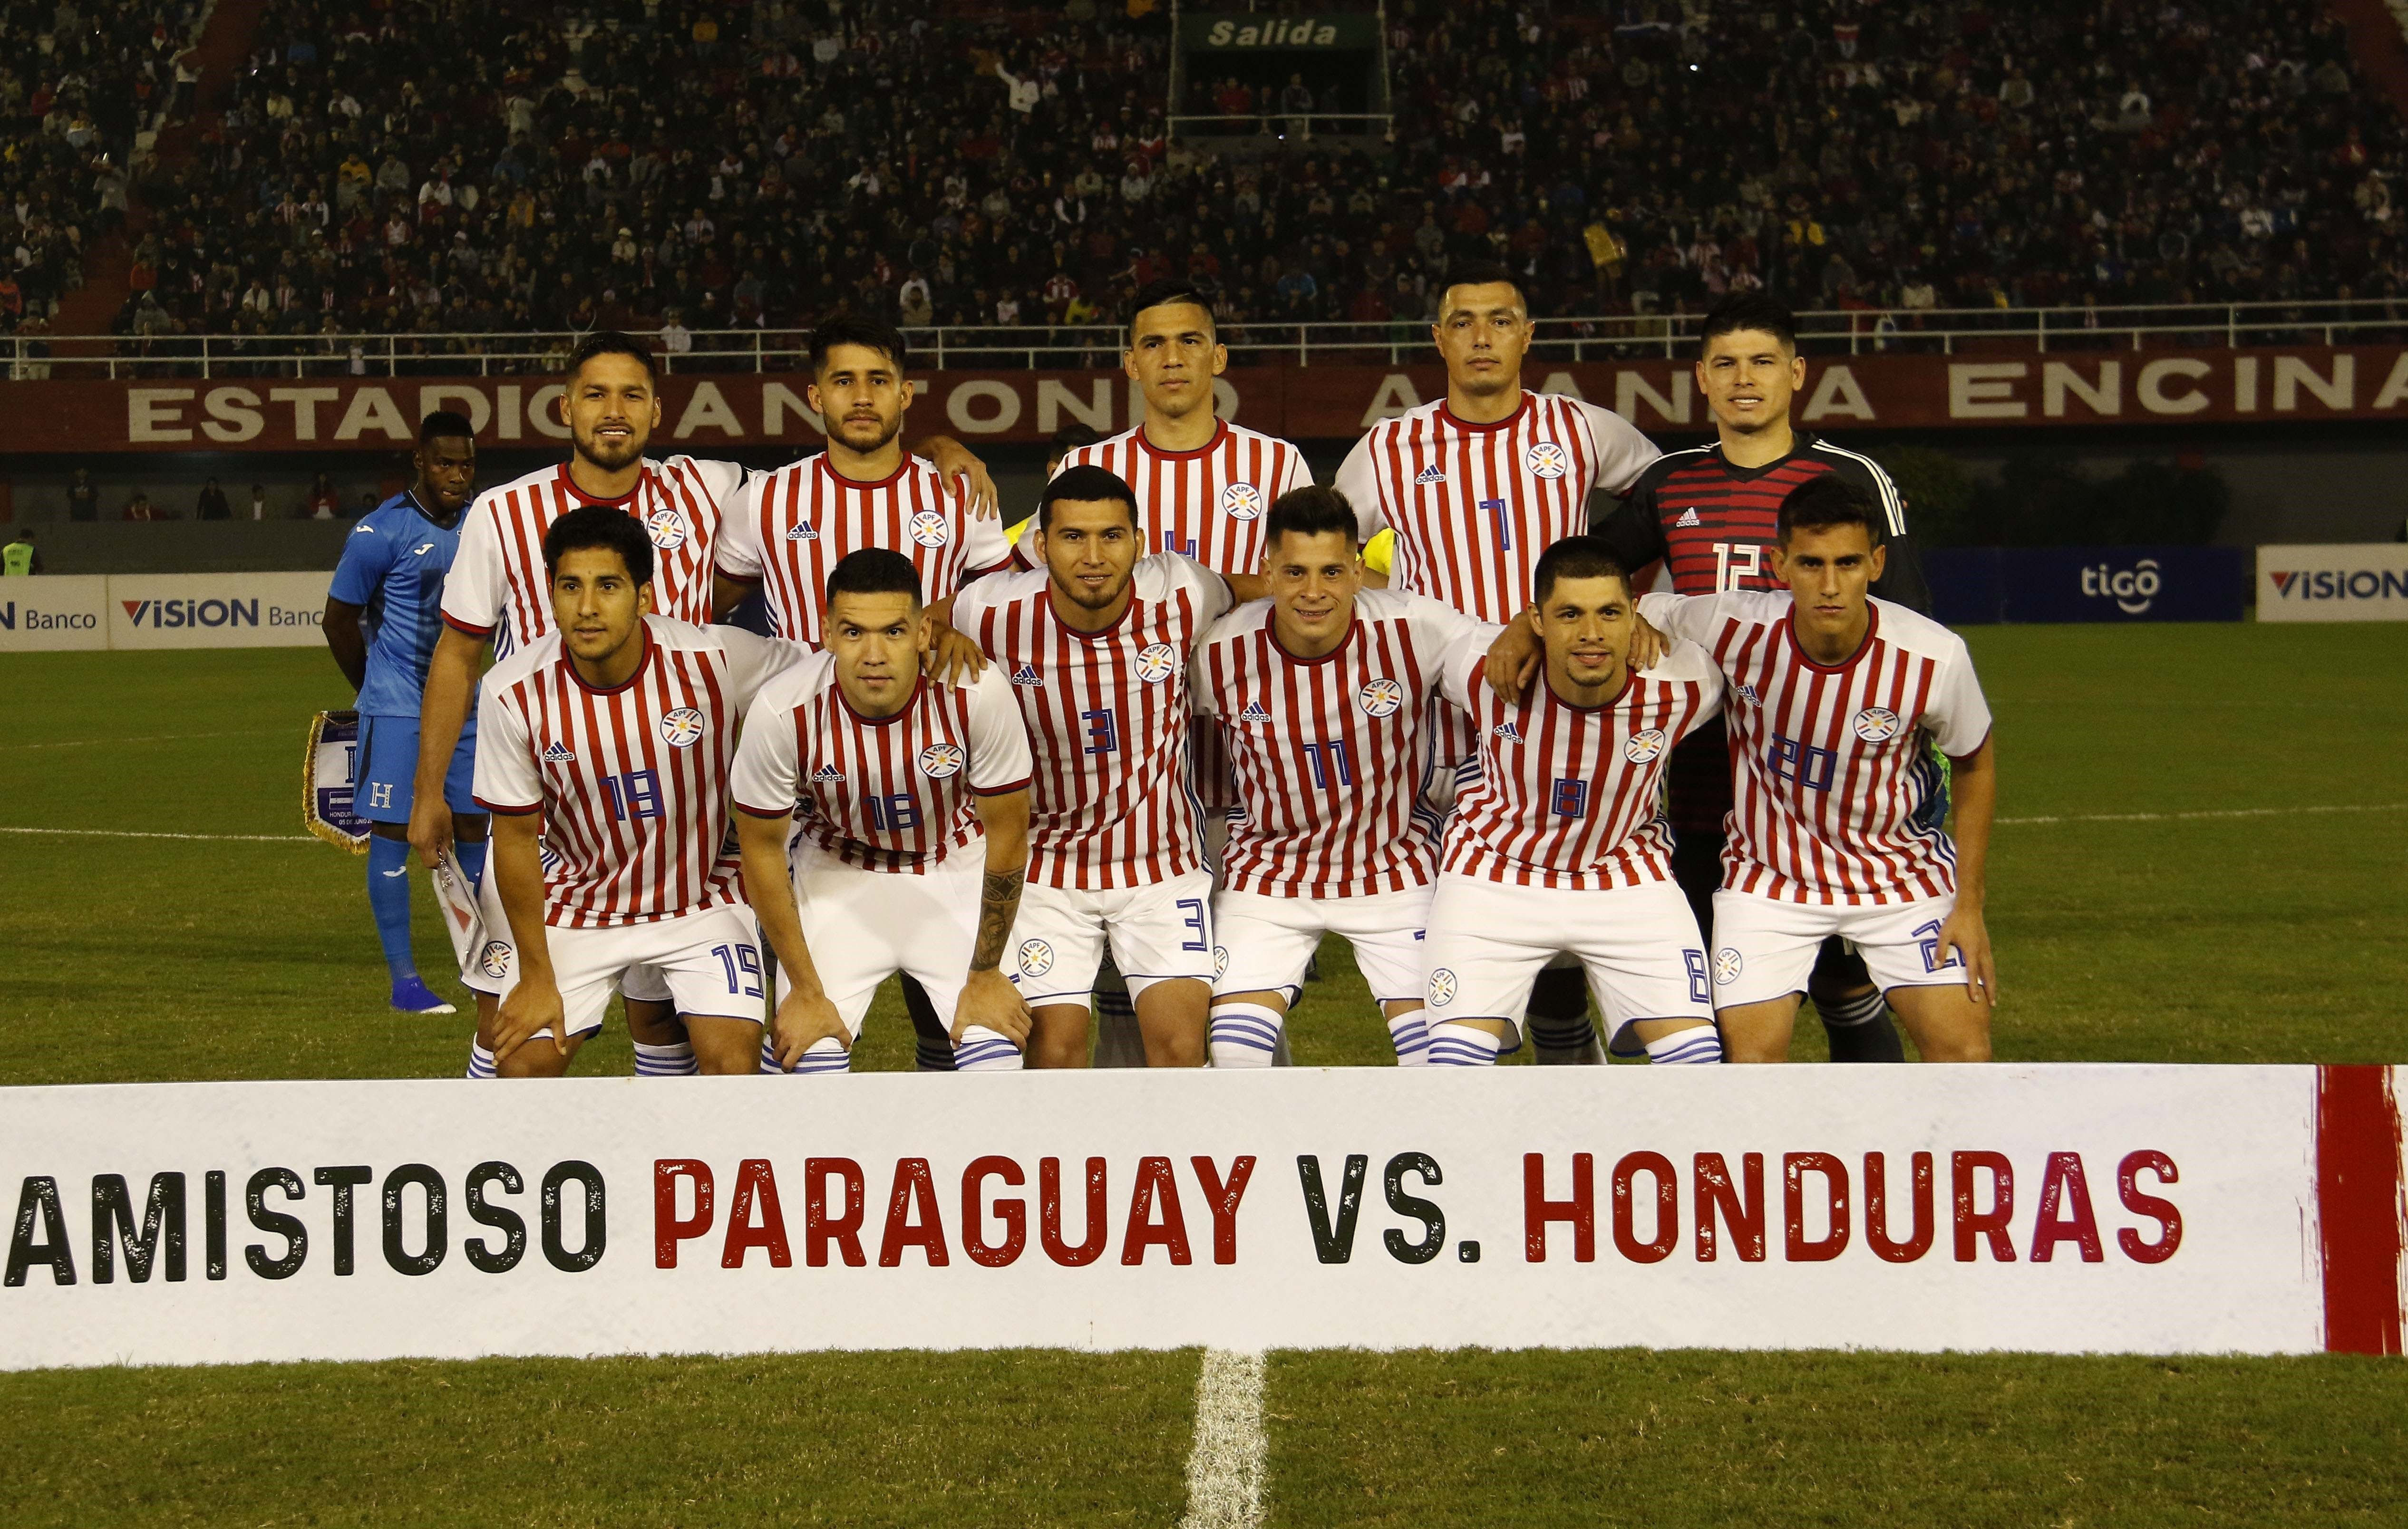 Jugadores de la selección paraguaya posan este miércoles en el partido amistoso entre Paraguay y Honduras, en el estadio Antonio Aranda de Ciudad del Este (Paraguay). (Foto Prensa Libre: EFE)